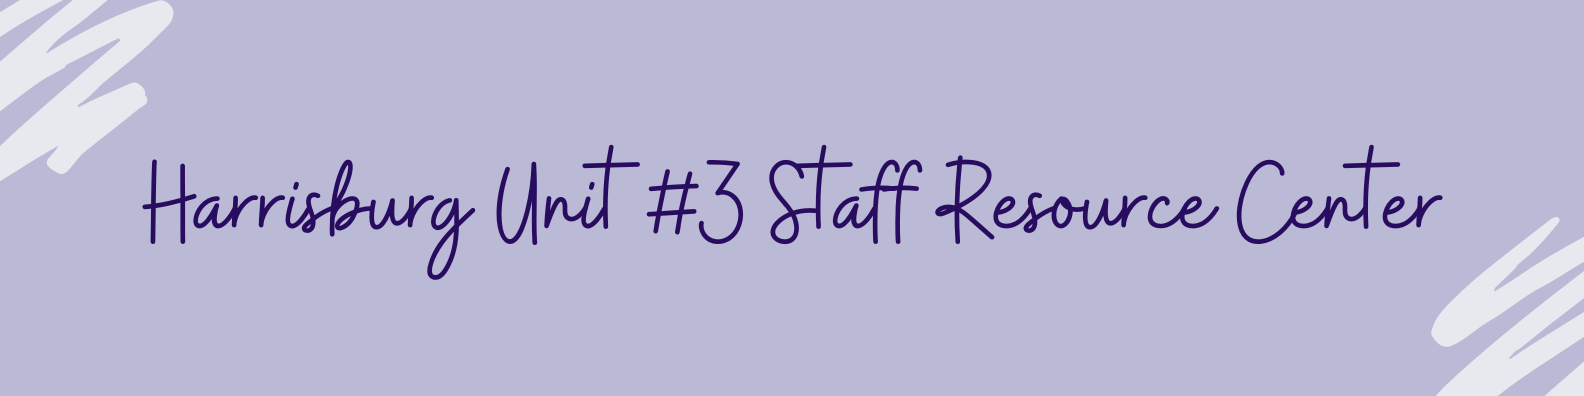 staff resource center banner